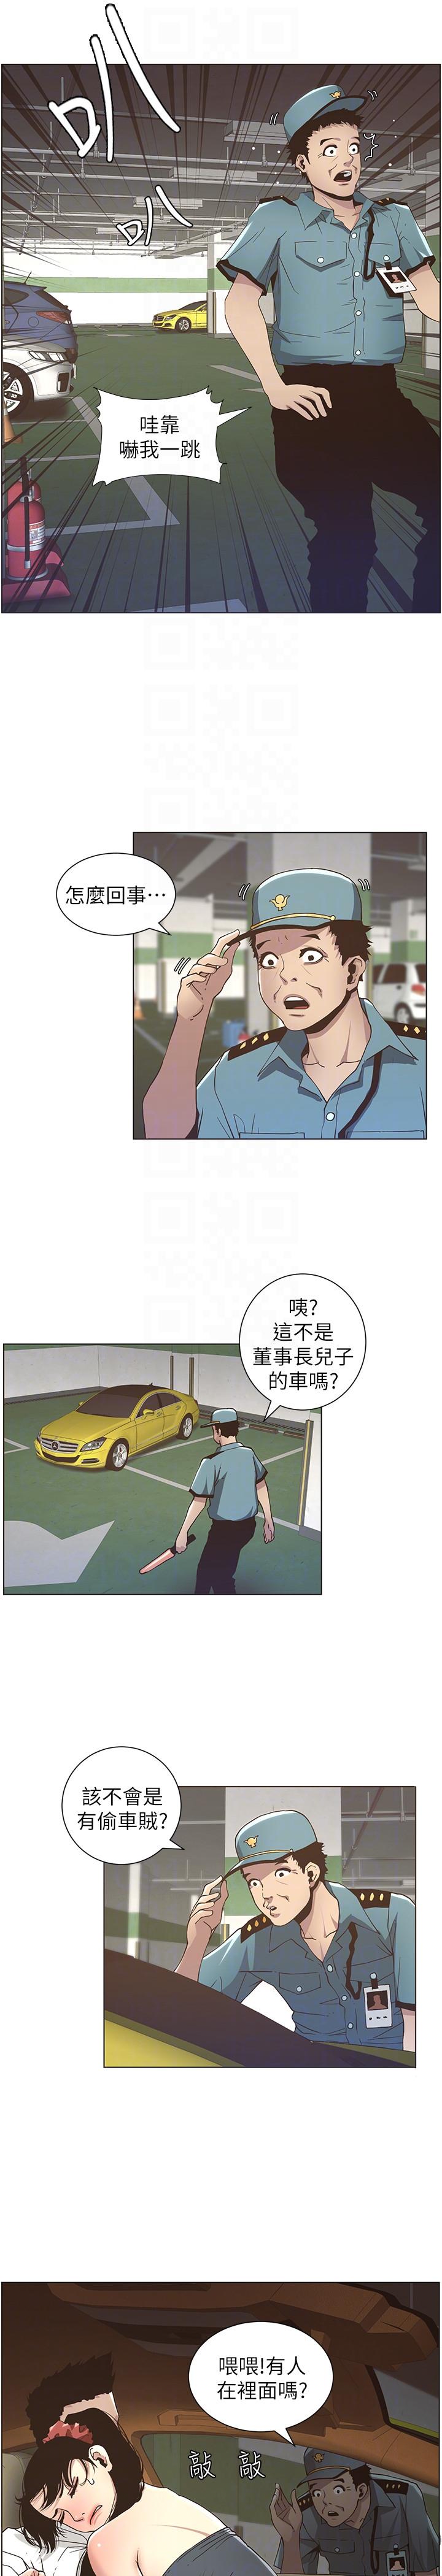 《姊妹与继父》漫画 第15话-在停车场车震